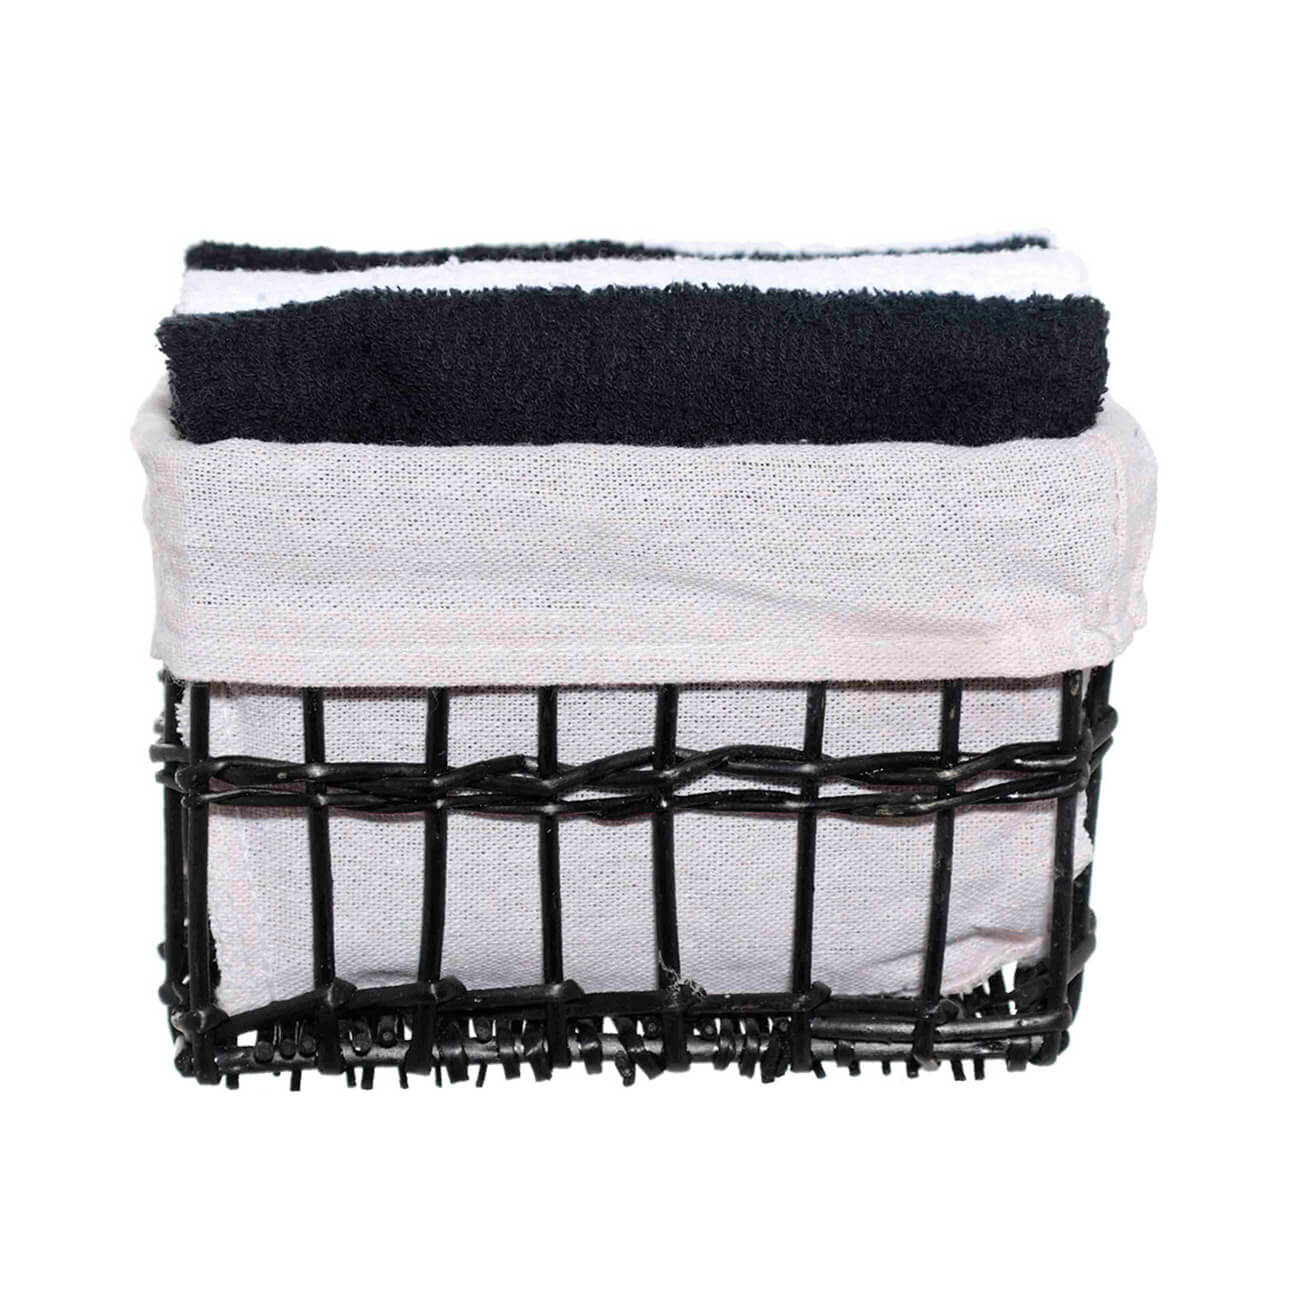 Полотенце, 30х30 см, 4 шт, в корзине, хлопок/лоза, черное/белое, Basket towel полотенце классик персиковый р 33х60